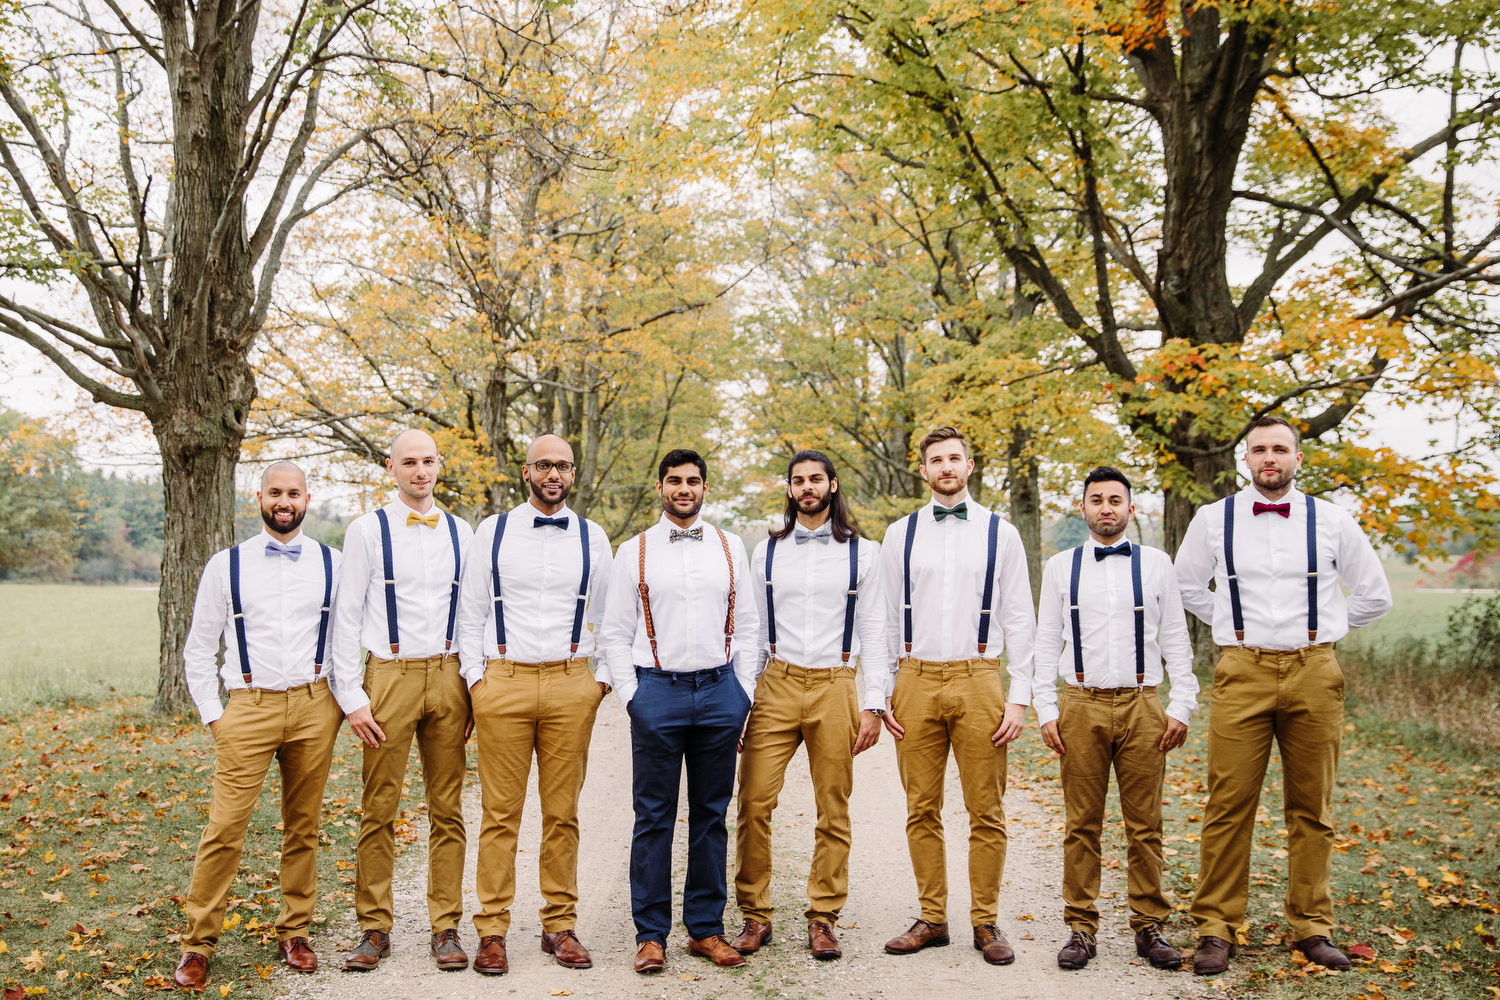 bohemian groomsmen wedding photography